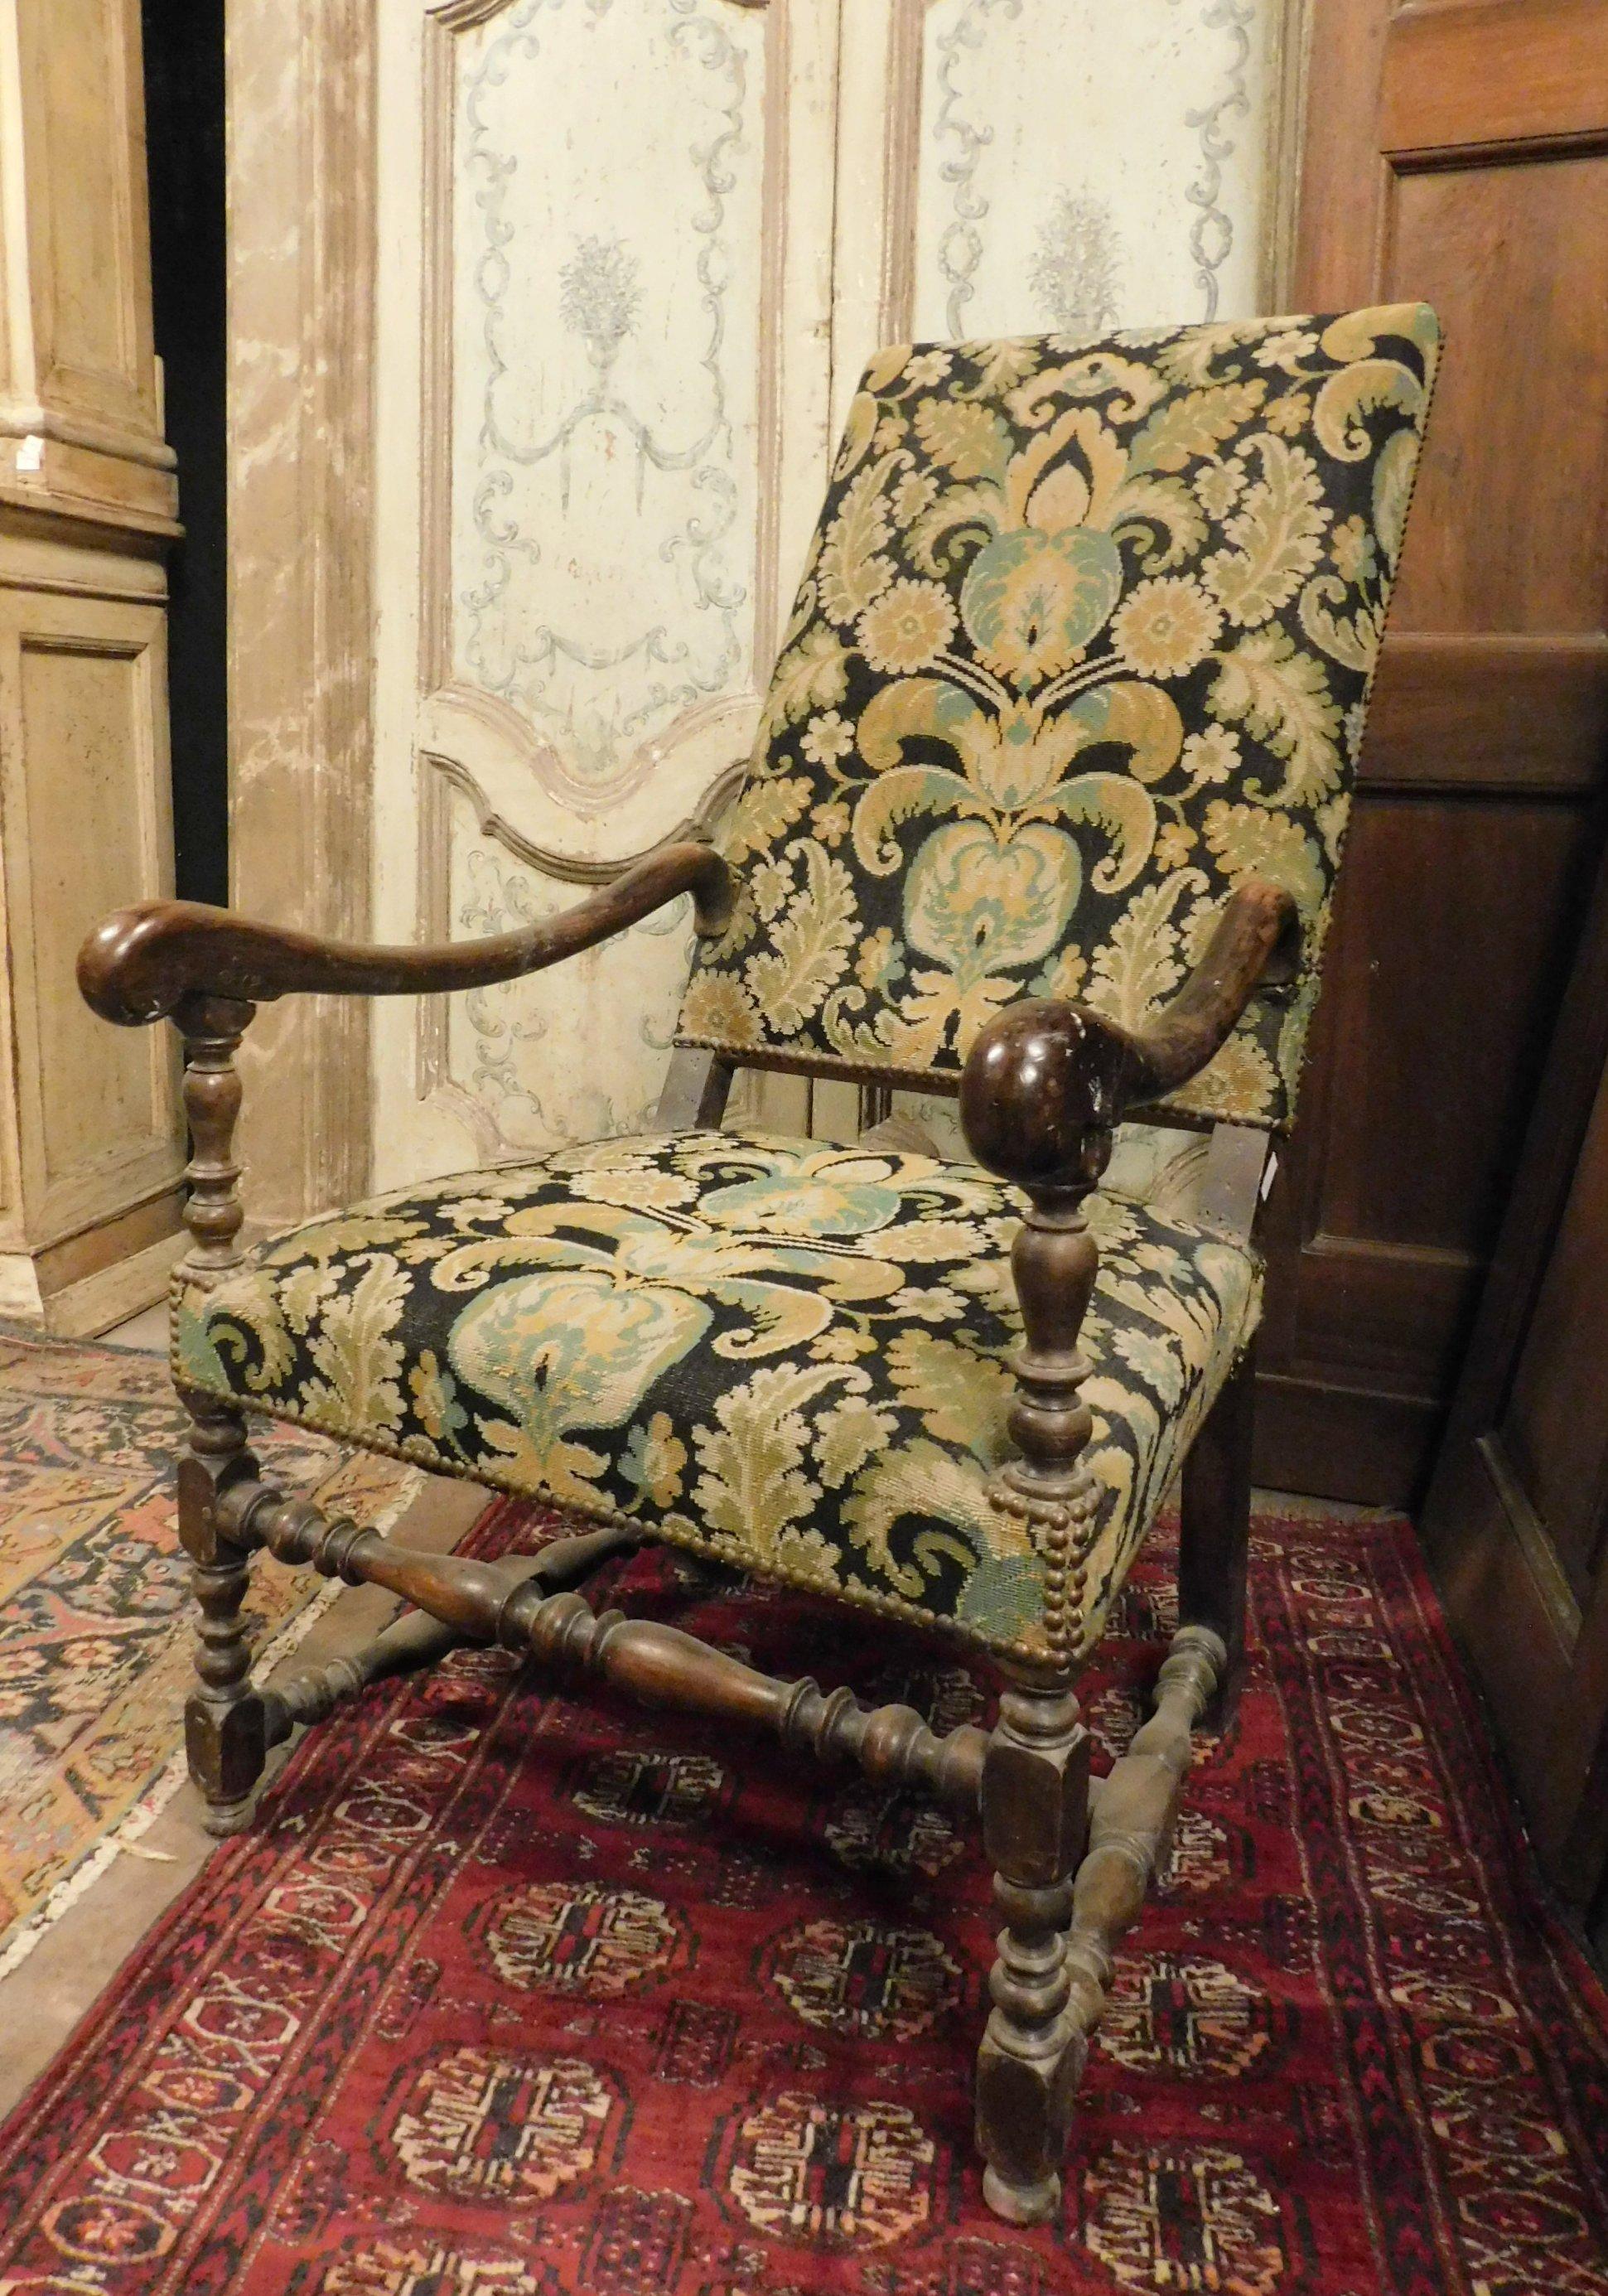 Ensemble de 2 fauteuils très anciens, entièrement sculptés à la main dans du bois de noyer précieux, construits selon la méthode de la bobine, de style Louis XIV, avec tissu de brocart dans les tons noirs et verts, originaux et en excellent état,